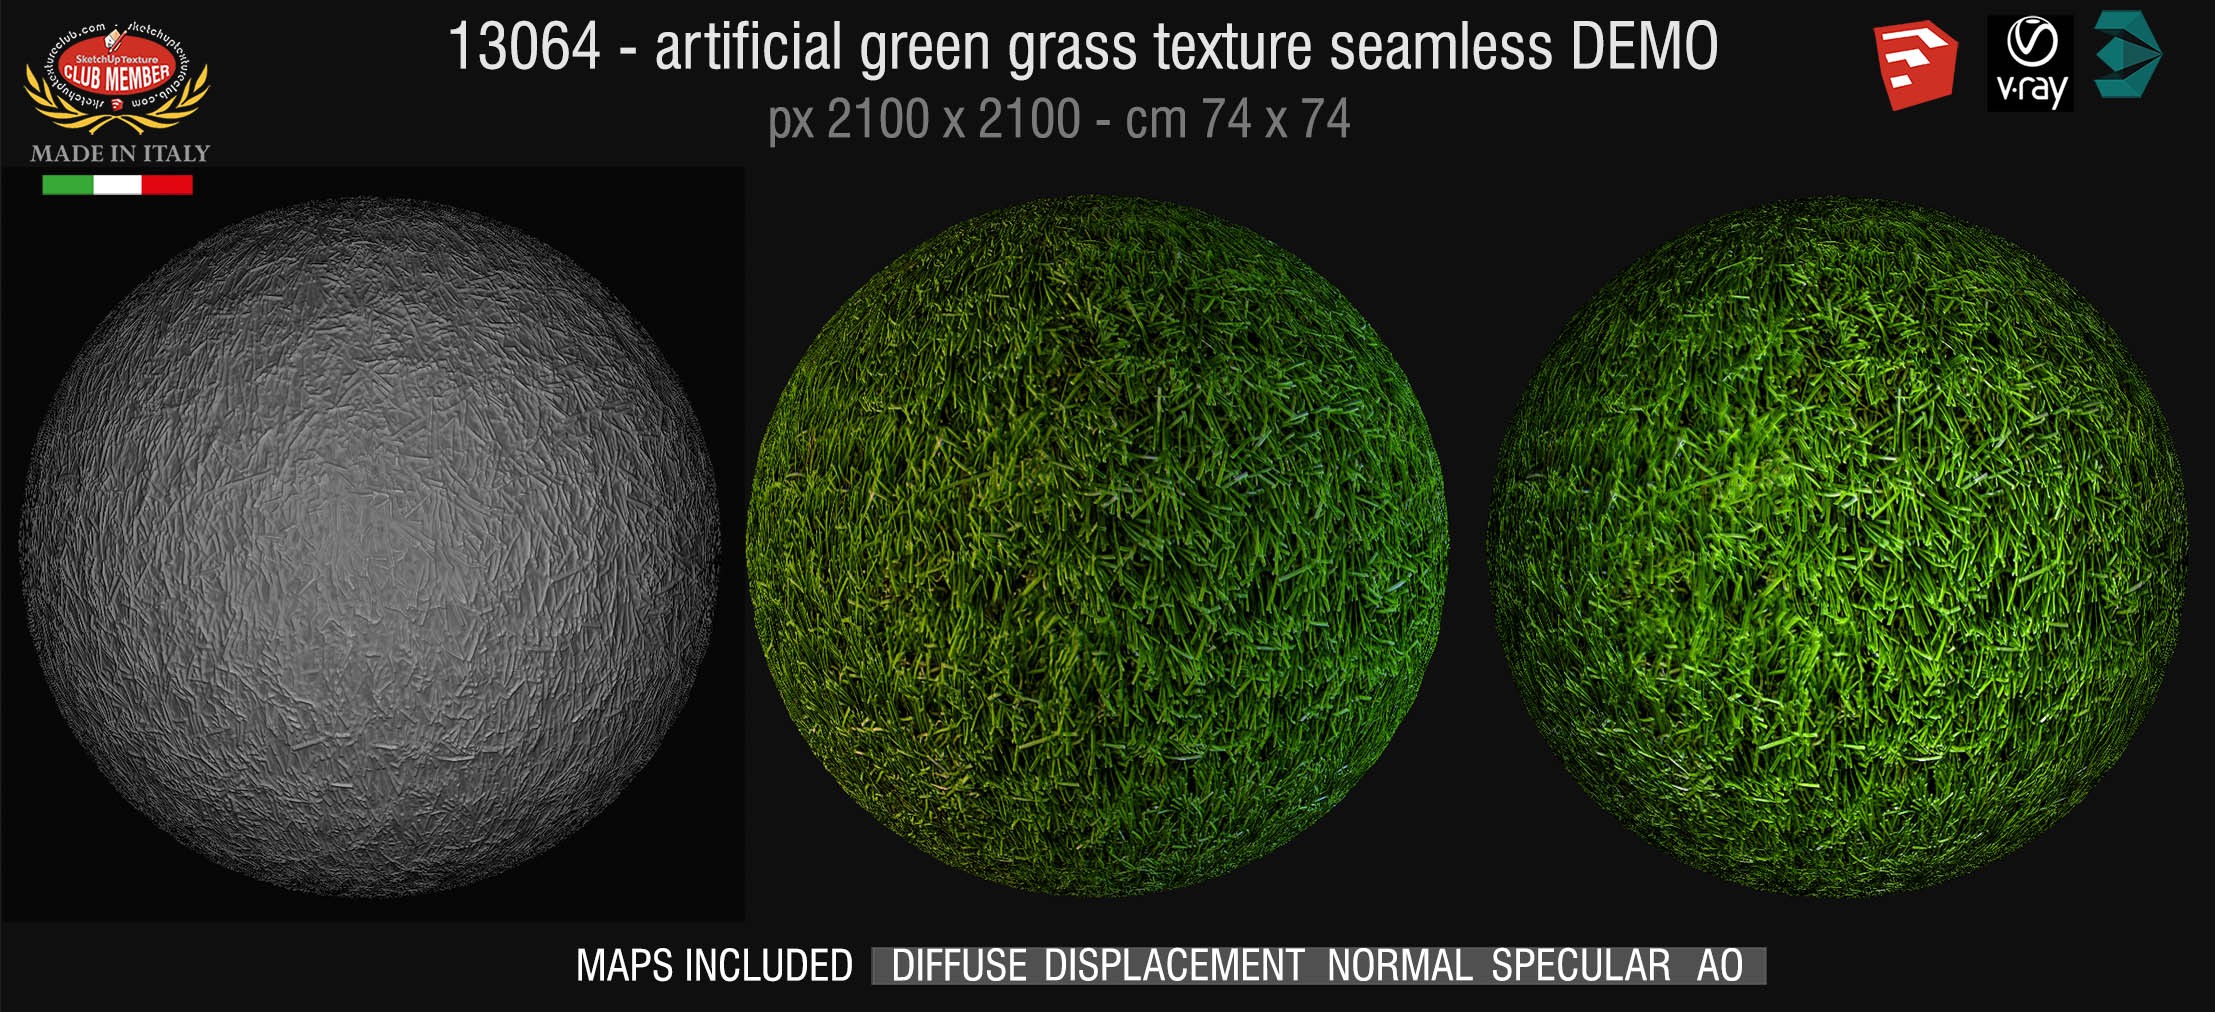 13064 HR Artificial green grass texture + maps DEMO